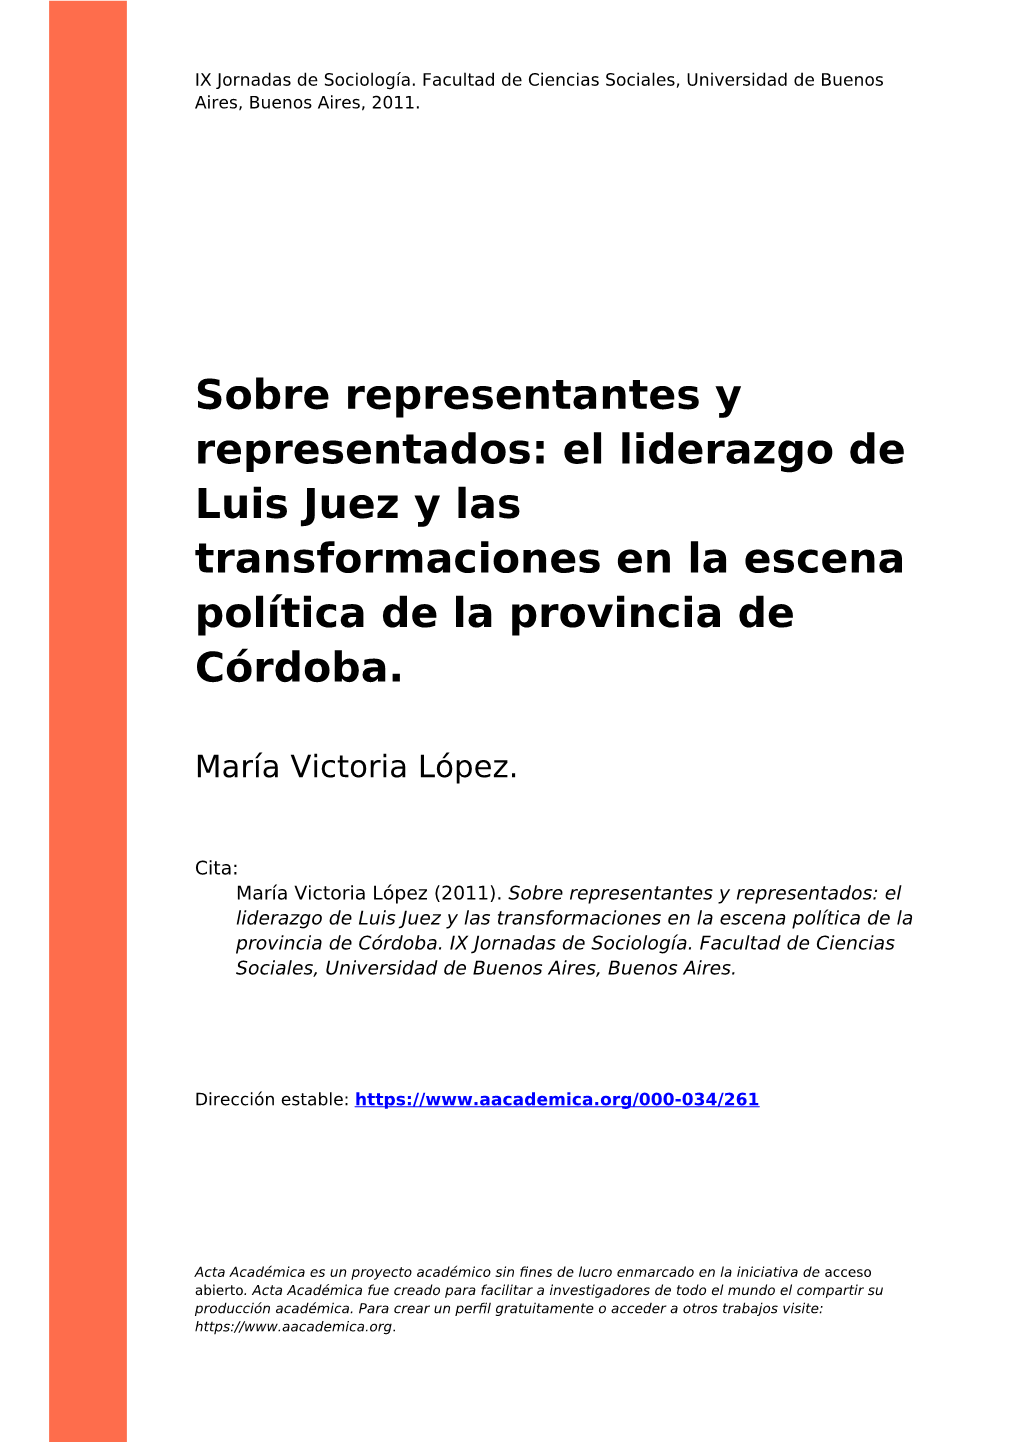 Sobre Representantes Y Representados: El Liderazgo De Luis Juez Y Las Transformaciones En La Escena Política De La Provincia De Córdoba